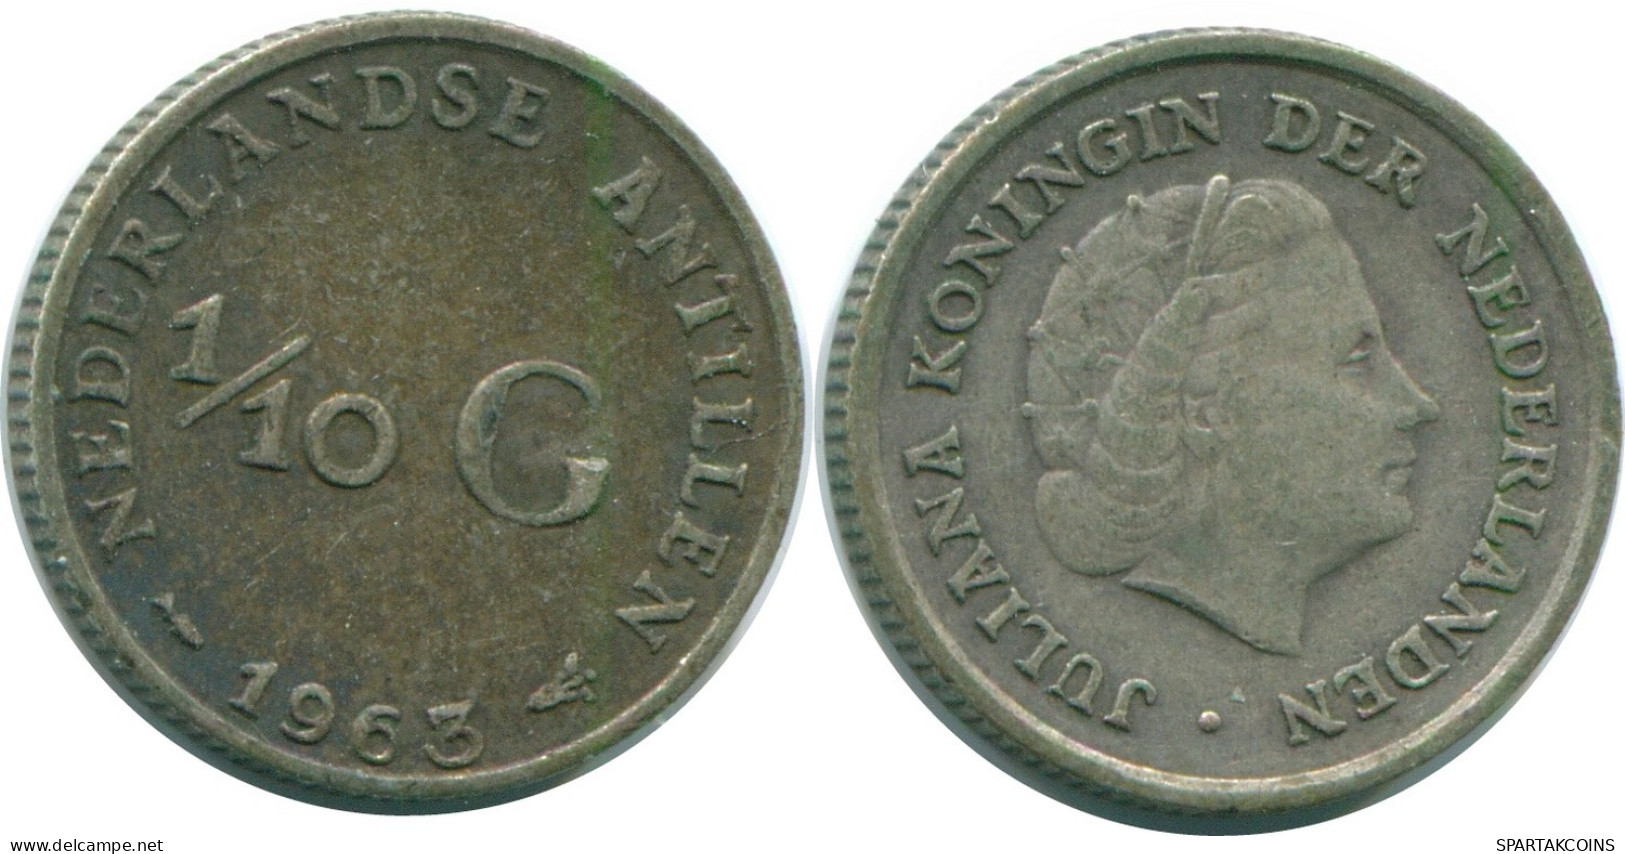 1/10 GULDEN 1963 NIEDERLÄNDISCHE ANTILLEN SILBER Koloniale Münze #NL12504.3.D.A - Niederländische Antillen